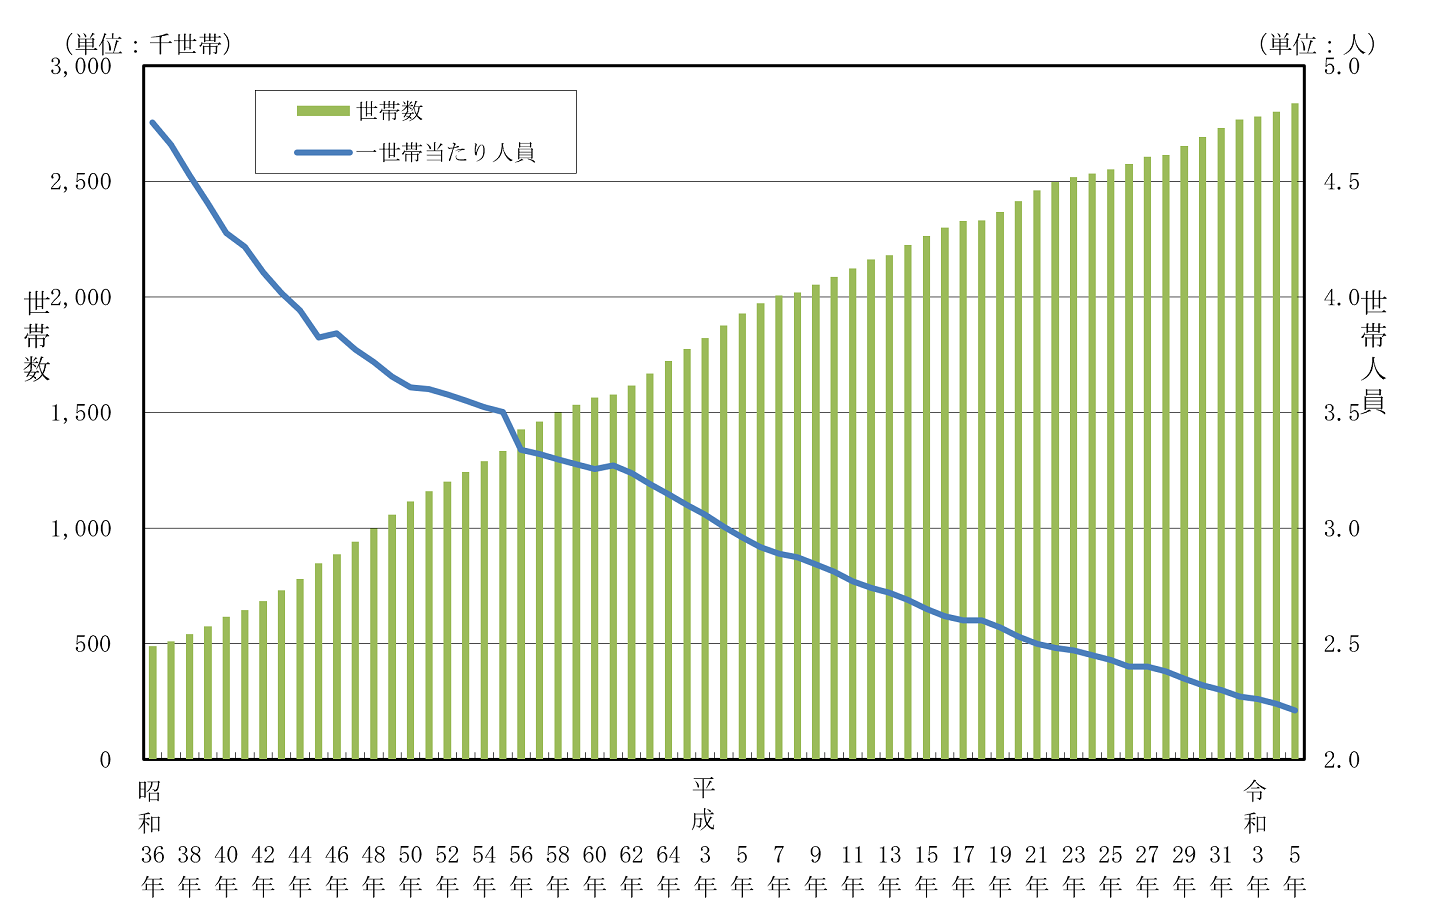 図6.世帯数及び世帯人員数の推移（昭和36年～令和5年、各年1月1日現在）